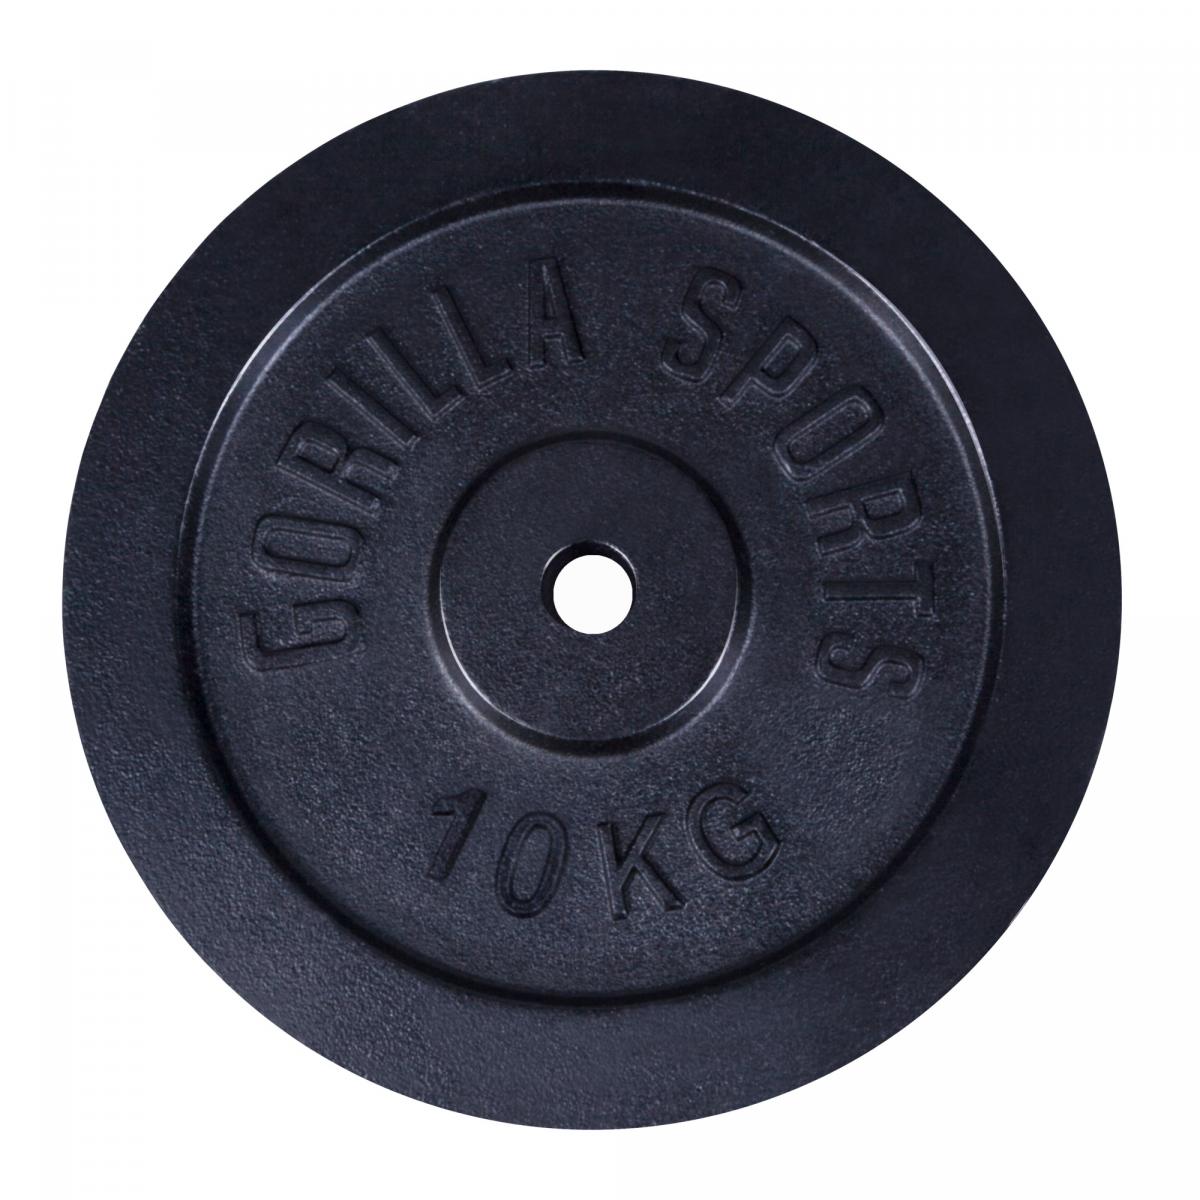 1 disque de poids en fonte noire de 10 kg - Ã 31mm d'alÃ©sage